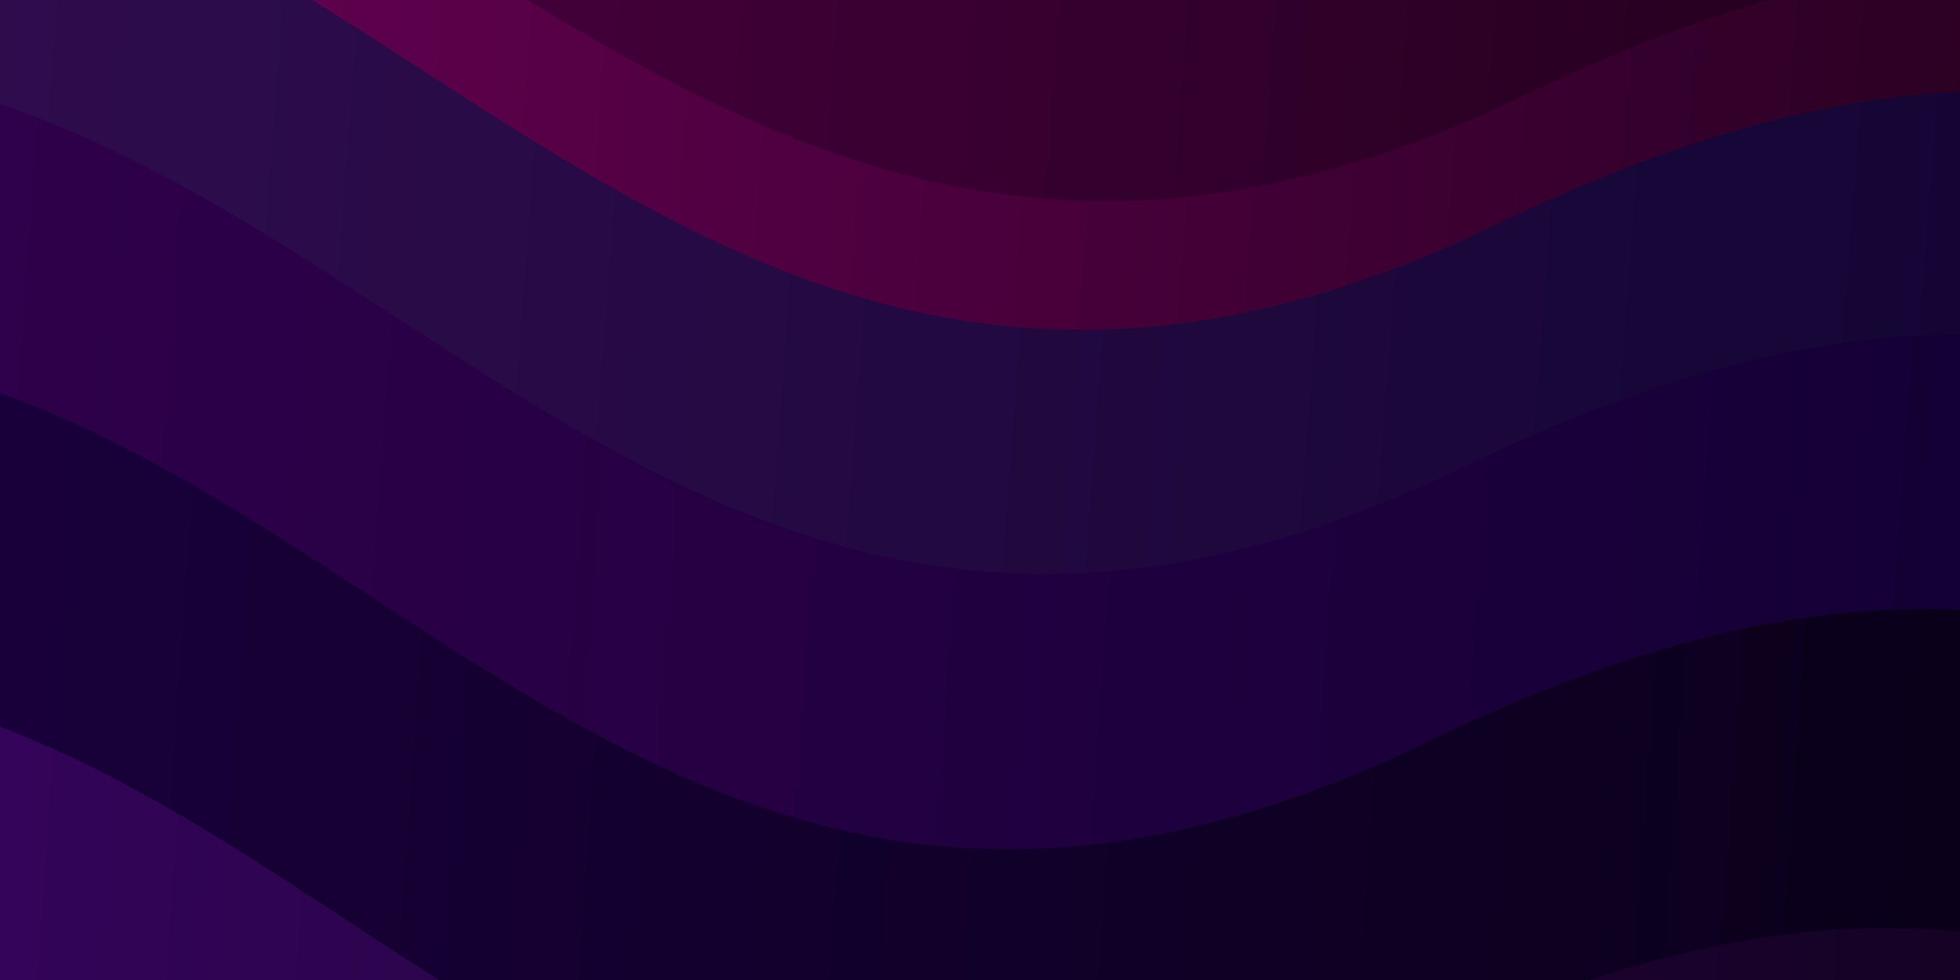 sfondo viola scuro e rosa con linee curve. vettore